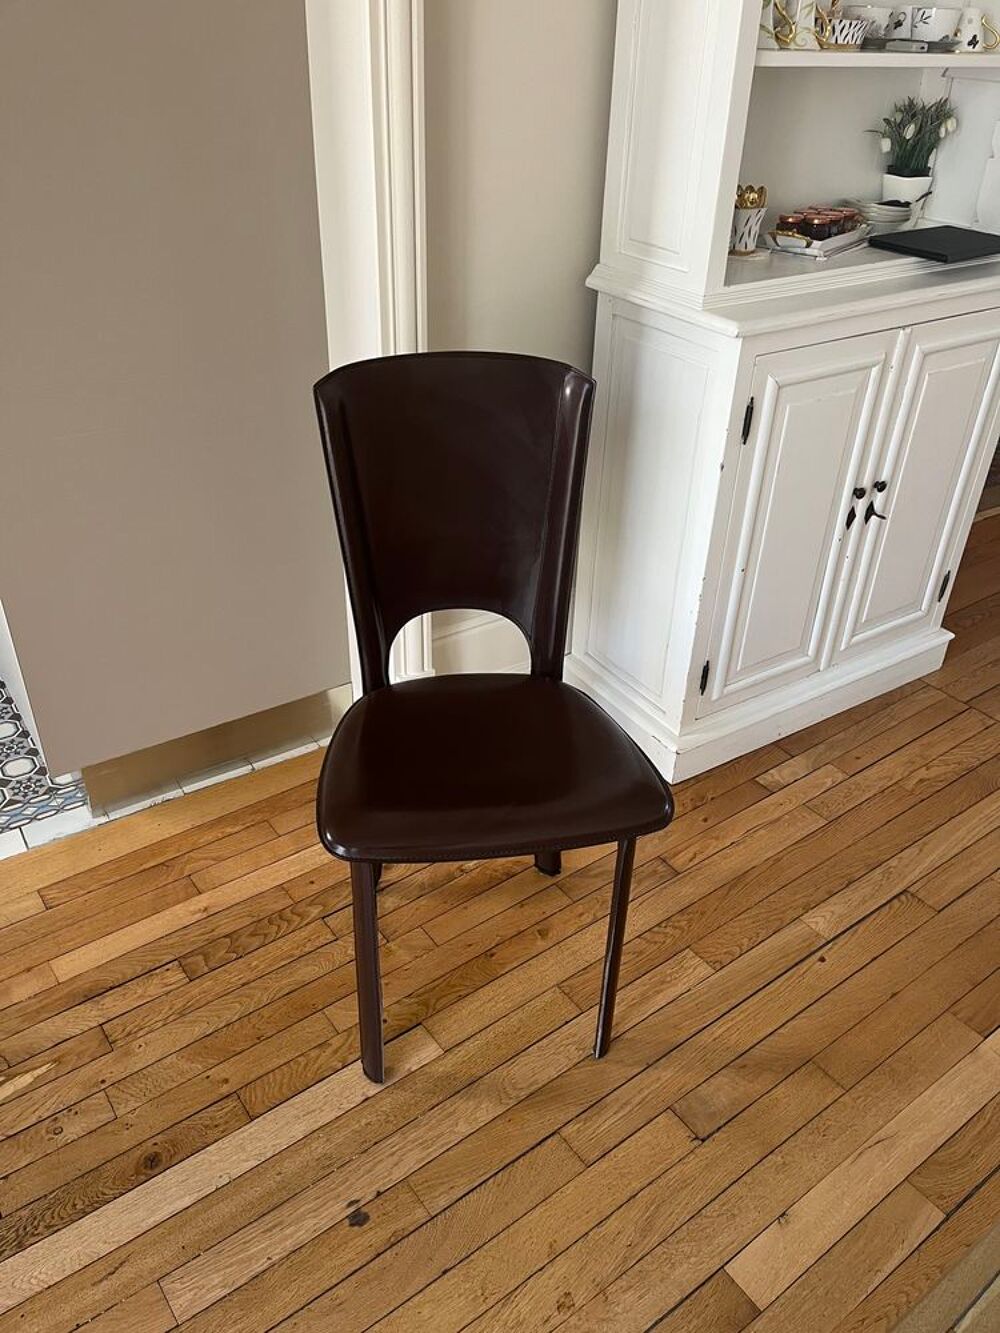 Table de repas design ligne Roset et chaises Meubles